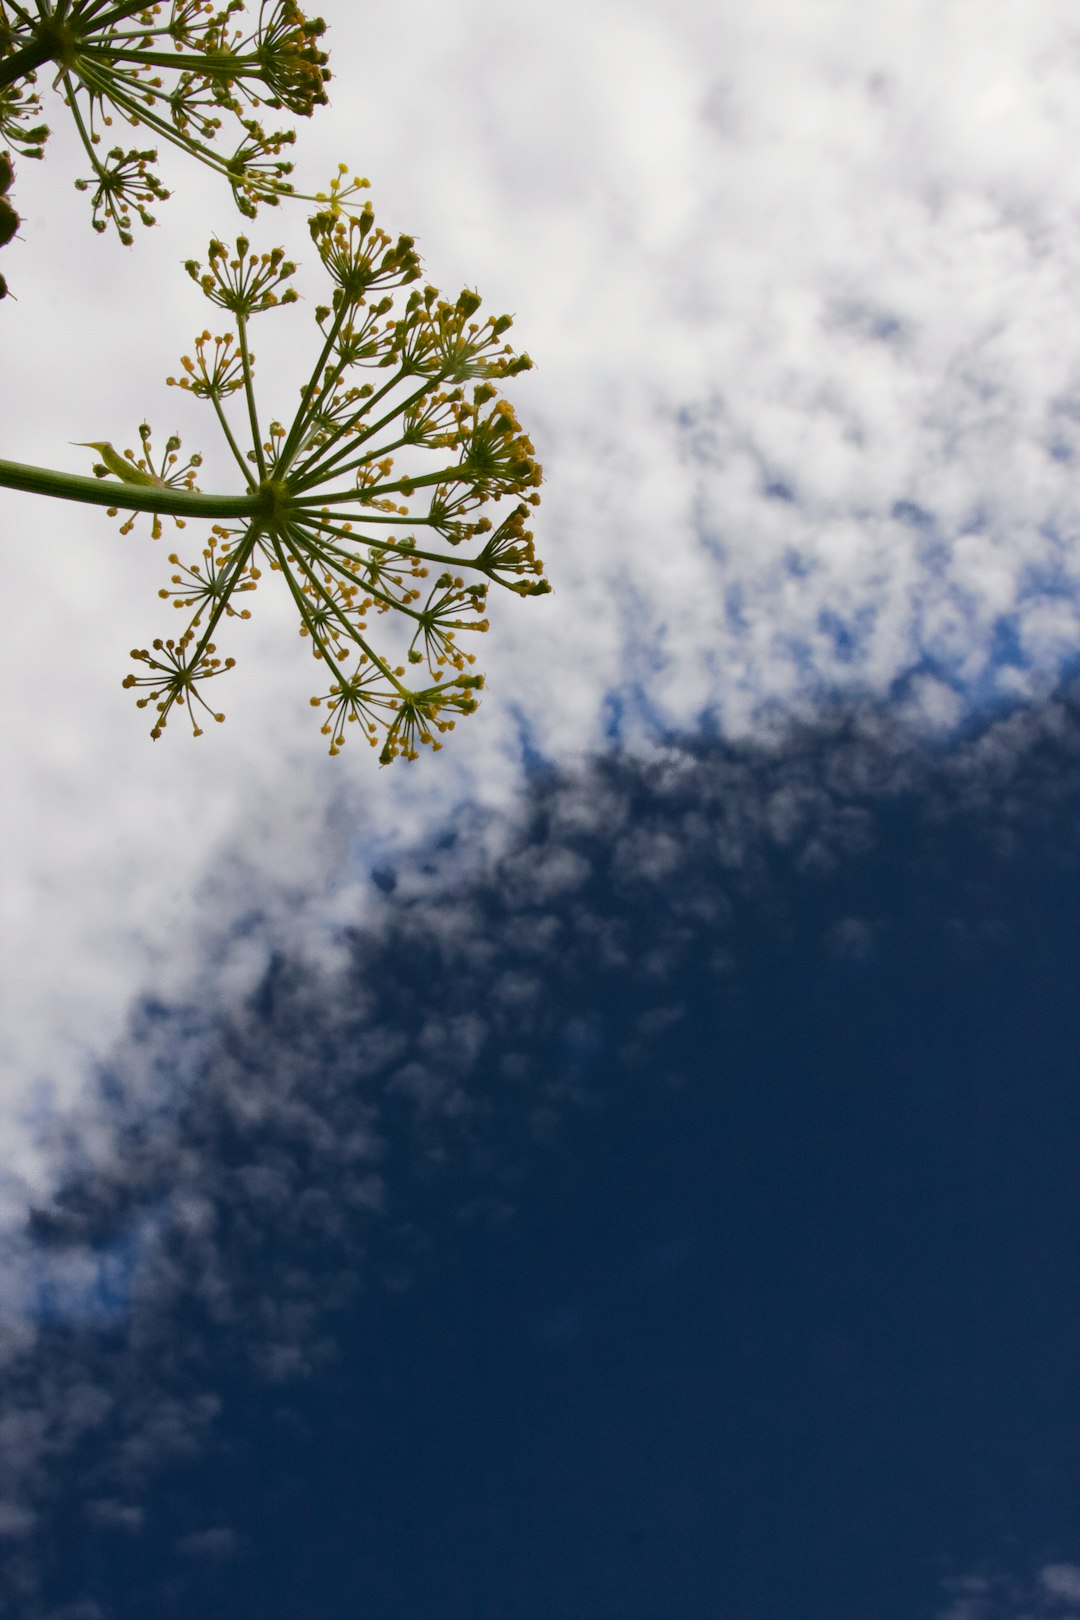 green leaf under blue sky during daytime